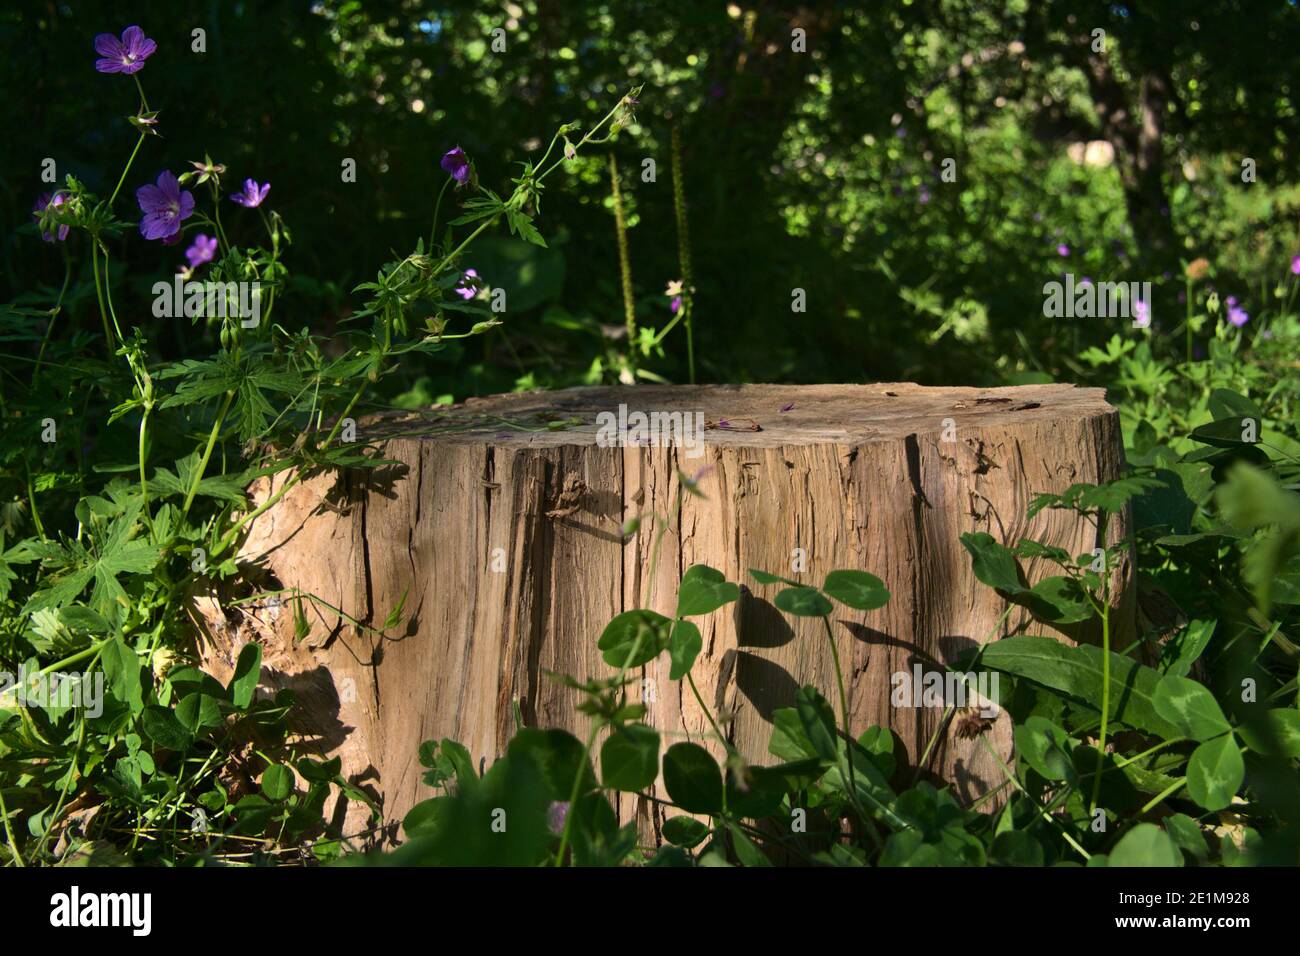 Eine einzelne gefällte Baumscheibe unter Blumen, grünen Gräsern und Ästen. Stockfoto